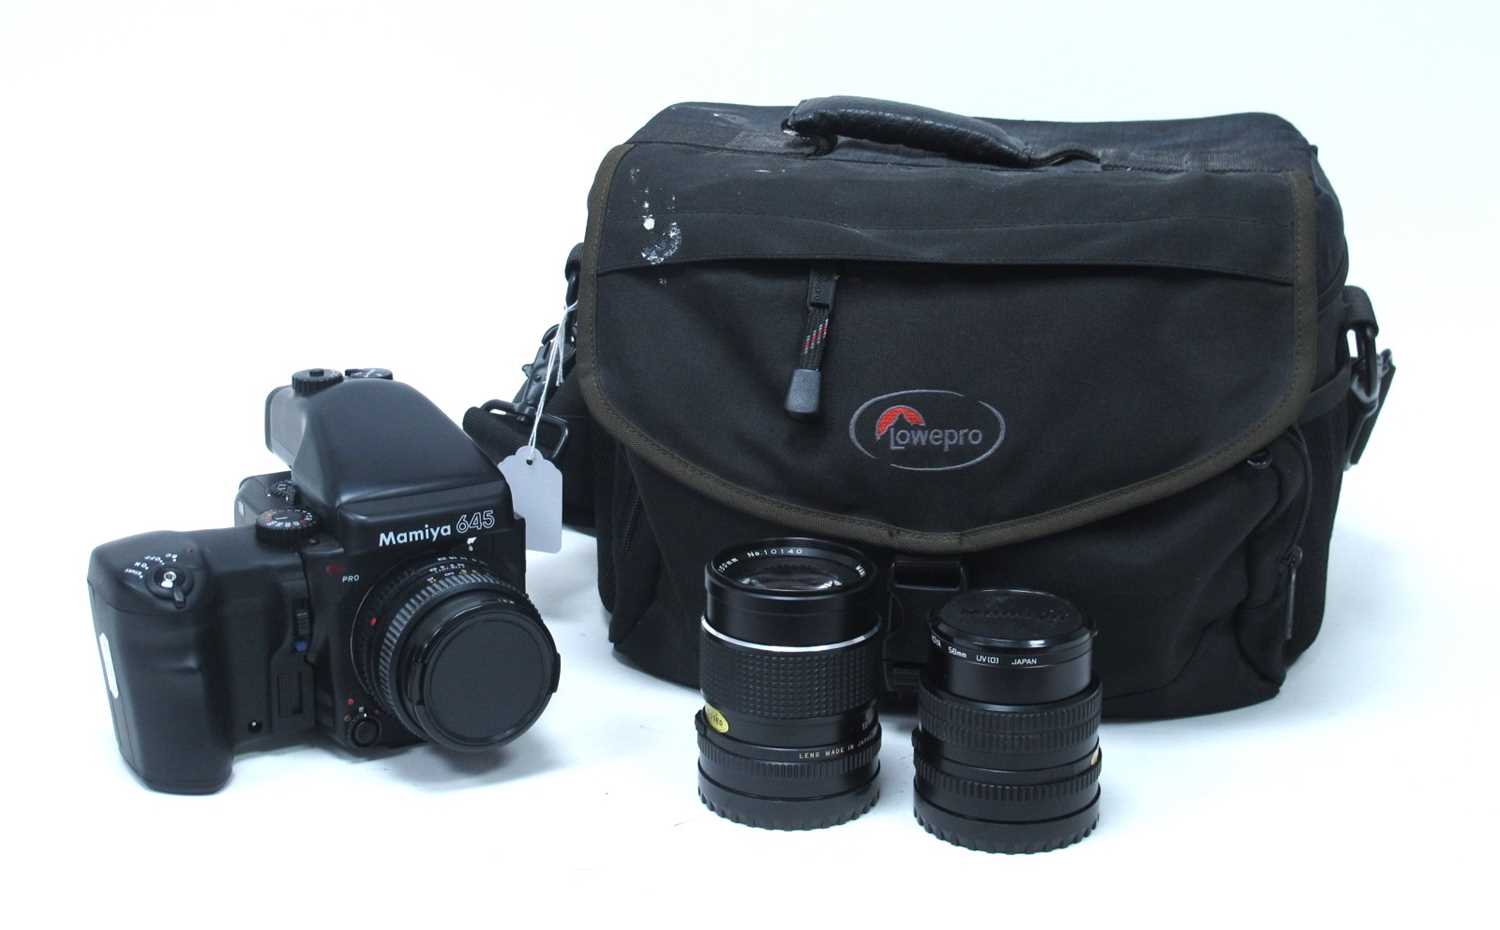 Mamiya 645 Pro Camera, having Mamiya - Sekor 80mm lens 1:2.8, extra 150mm 1:3.5 and 55mm 1:2.8